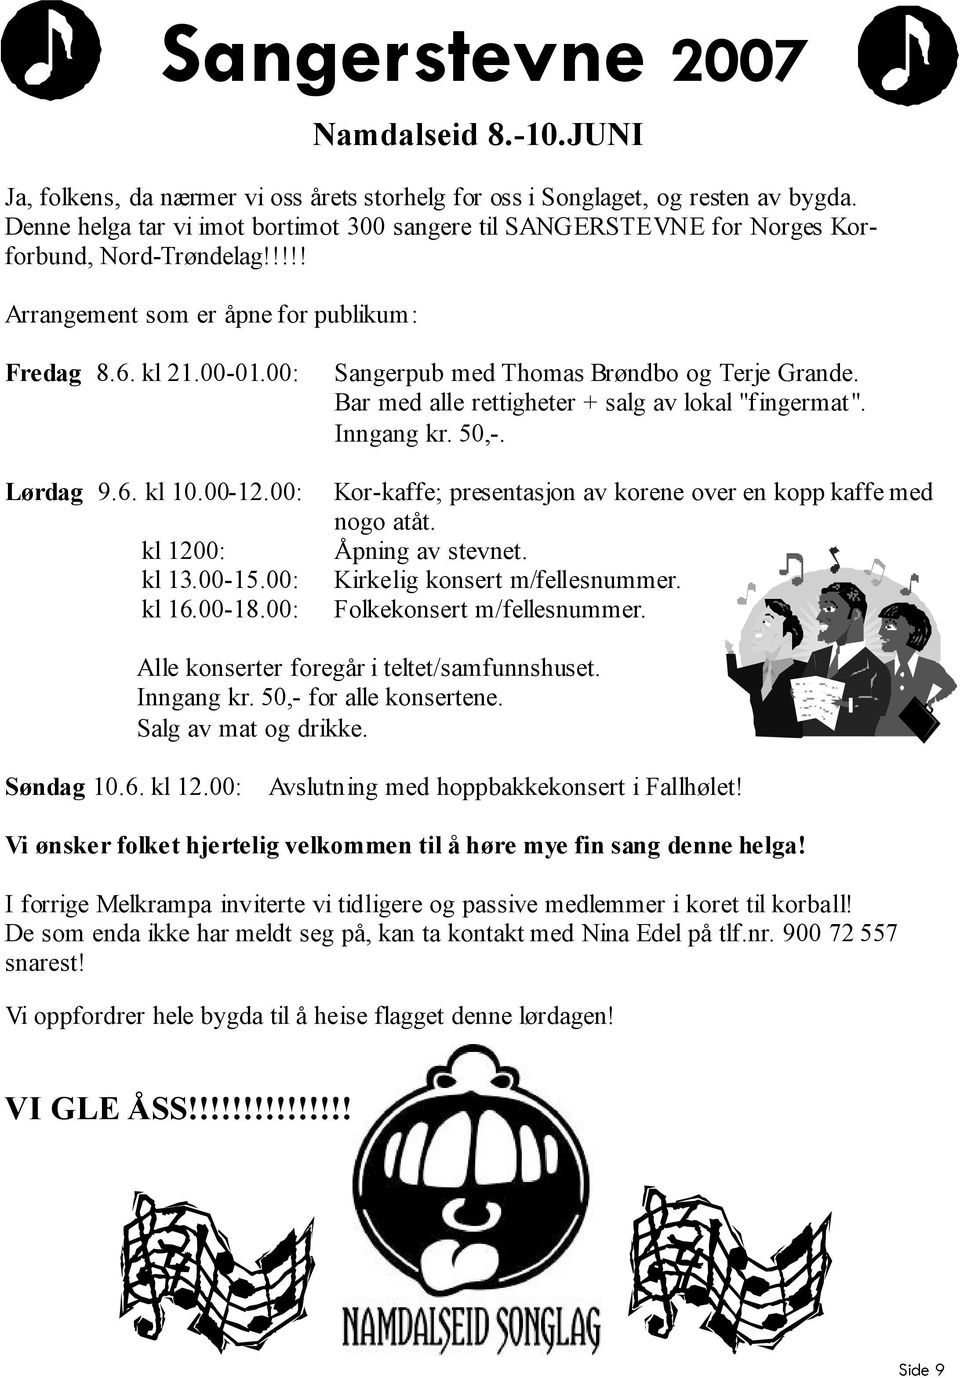 00: kl 1200: kl 13.00-15.00: kl 16.00-18.00: Sangerpub med Thomas Brøndbo og Terje Grande. Bar med alle rettigheter + salg av lokal "fingermat". Inngang kr. 50,-.